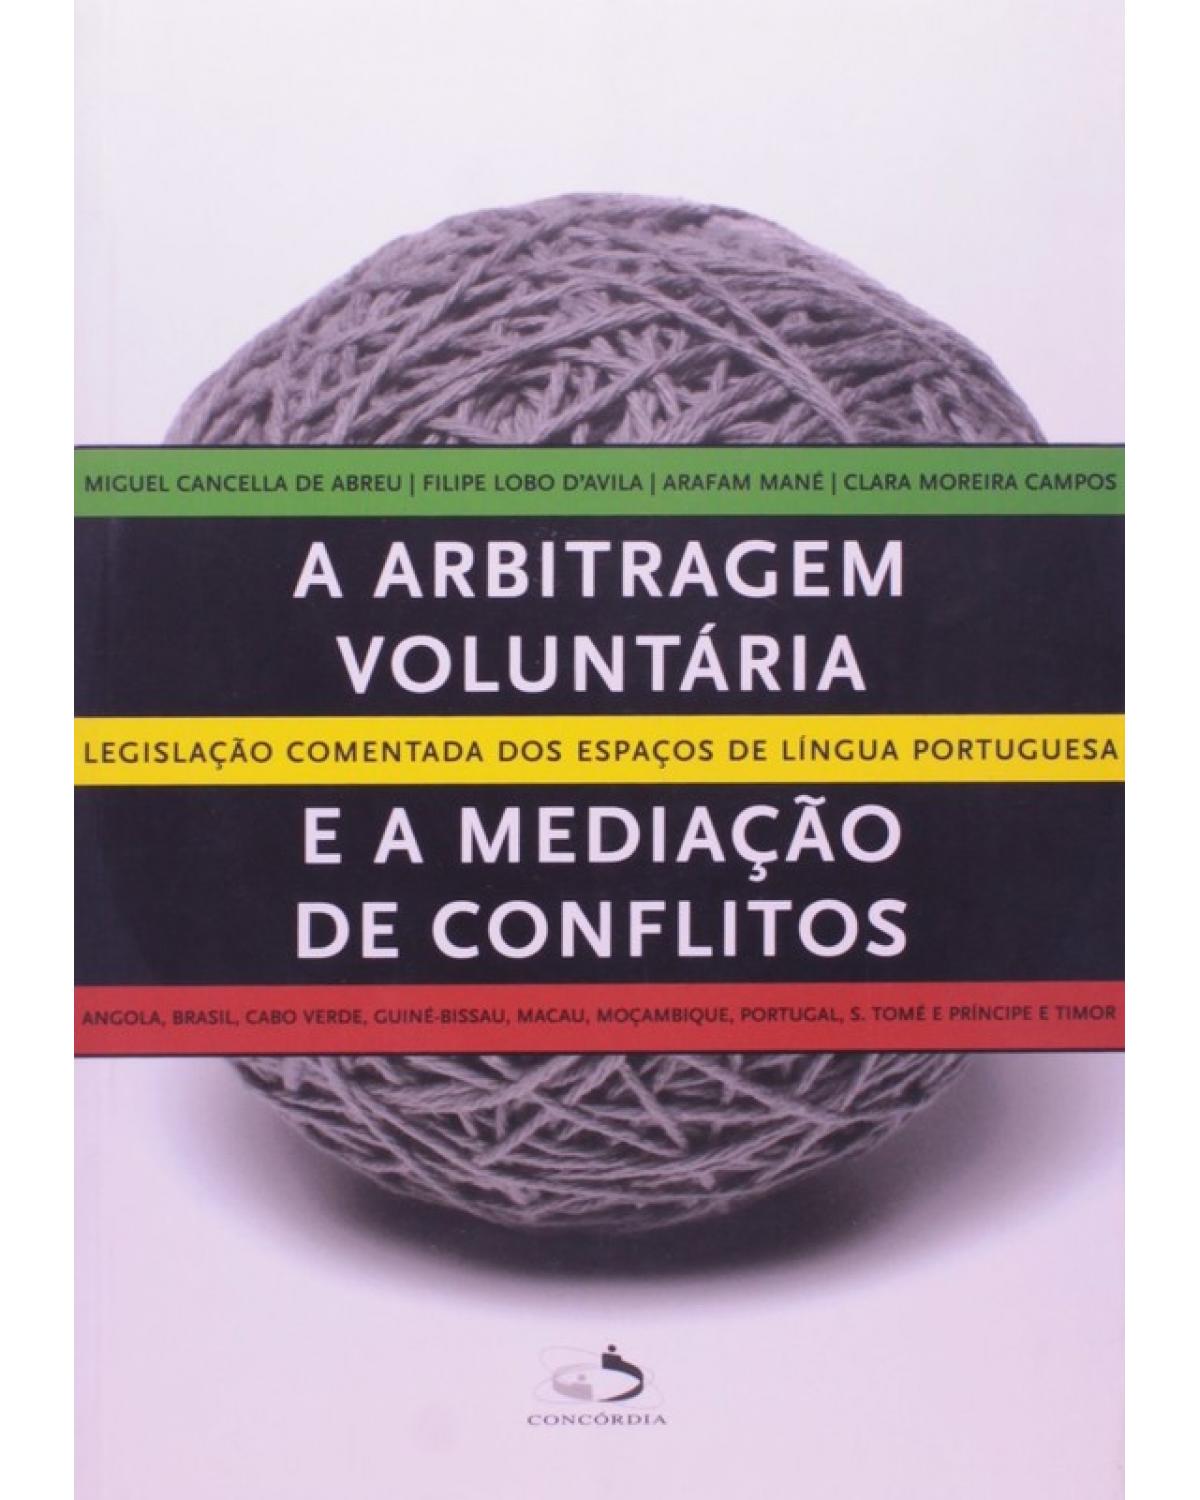 A Arbitragem Voluntária e a Mediação de Conflitos: Legislação Comentada dos Espaços de Língua Portuguesa